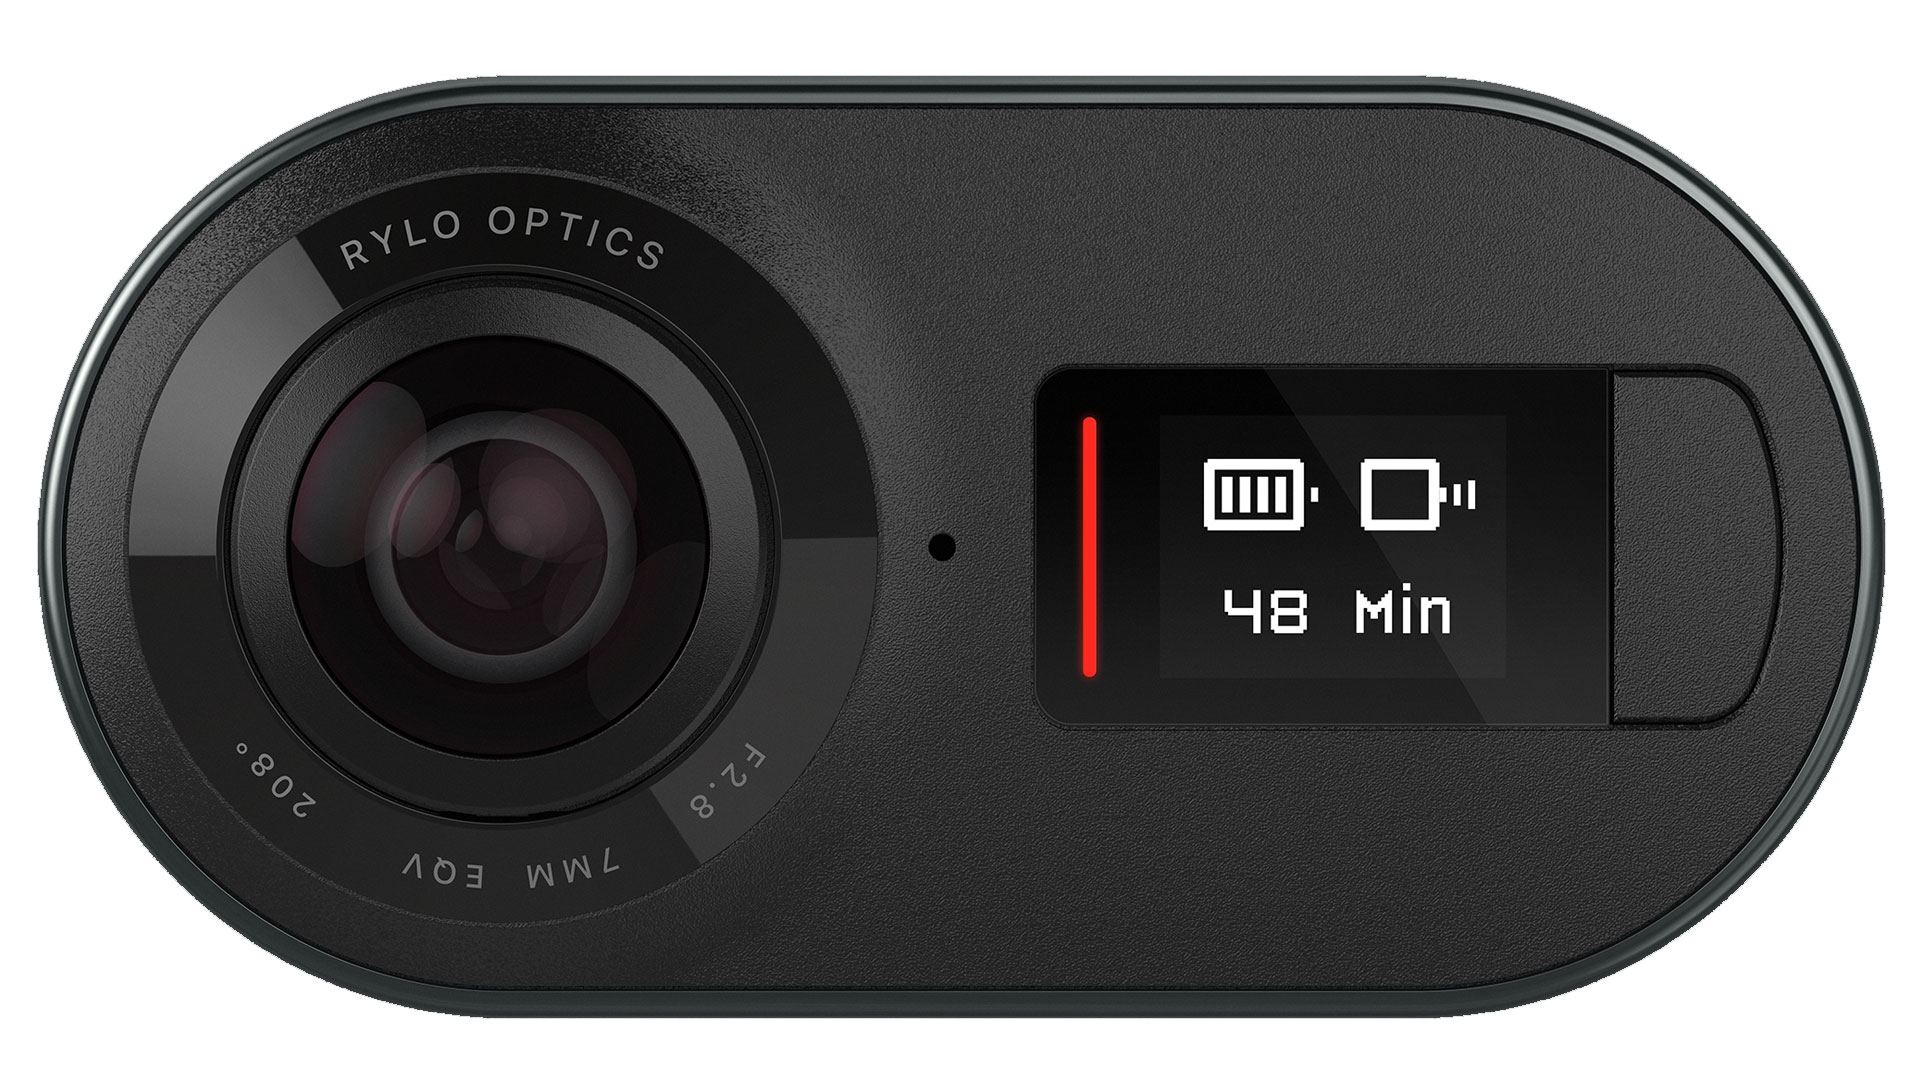 Rylo 360 Degree Camera